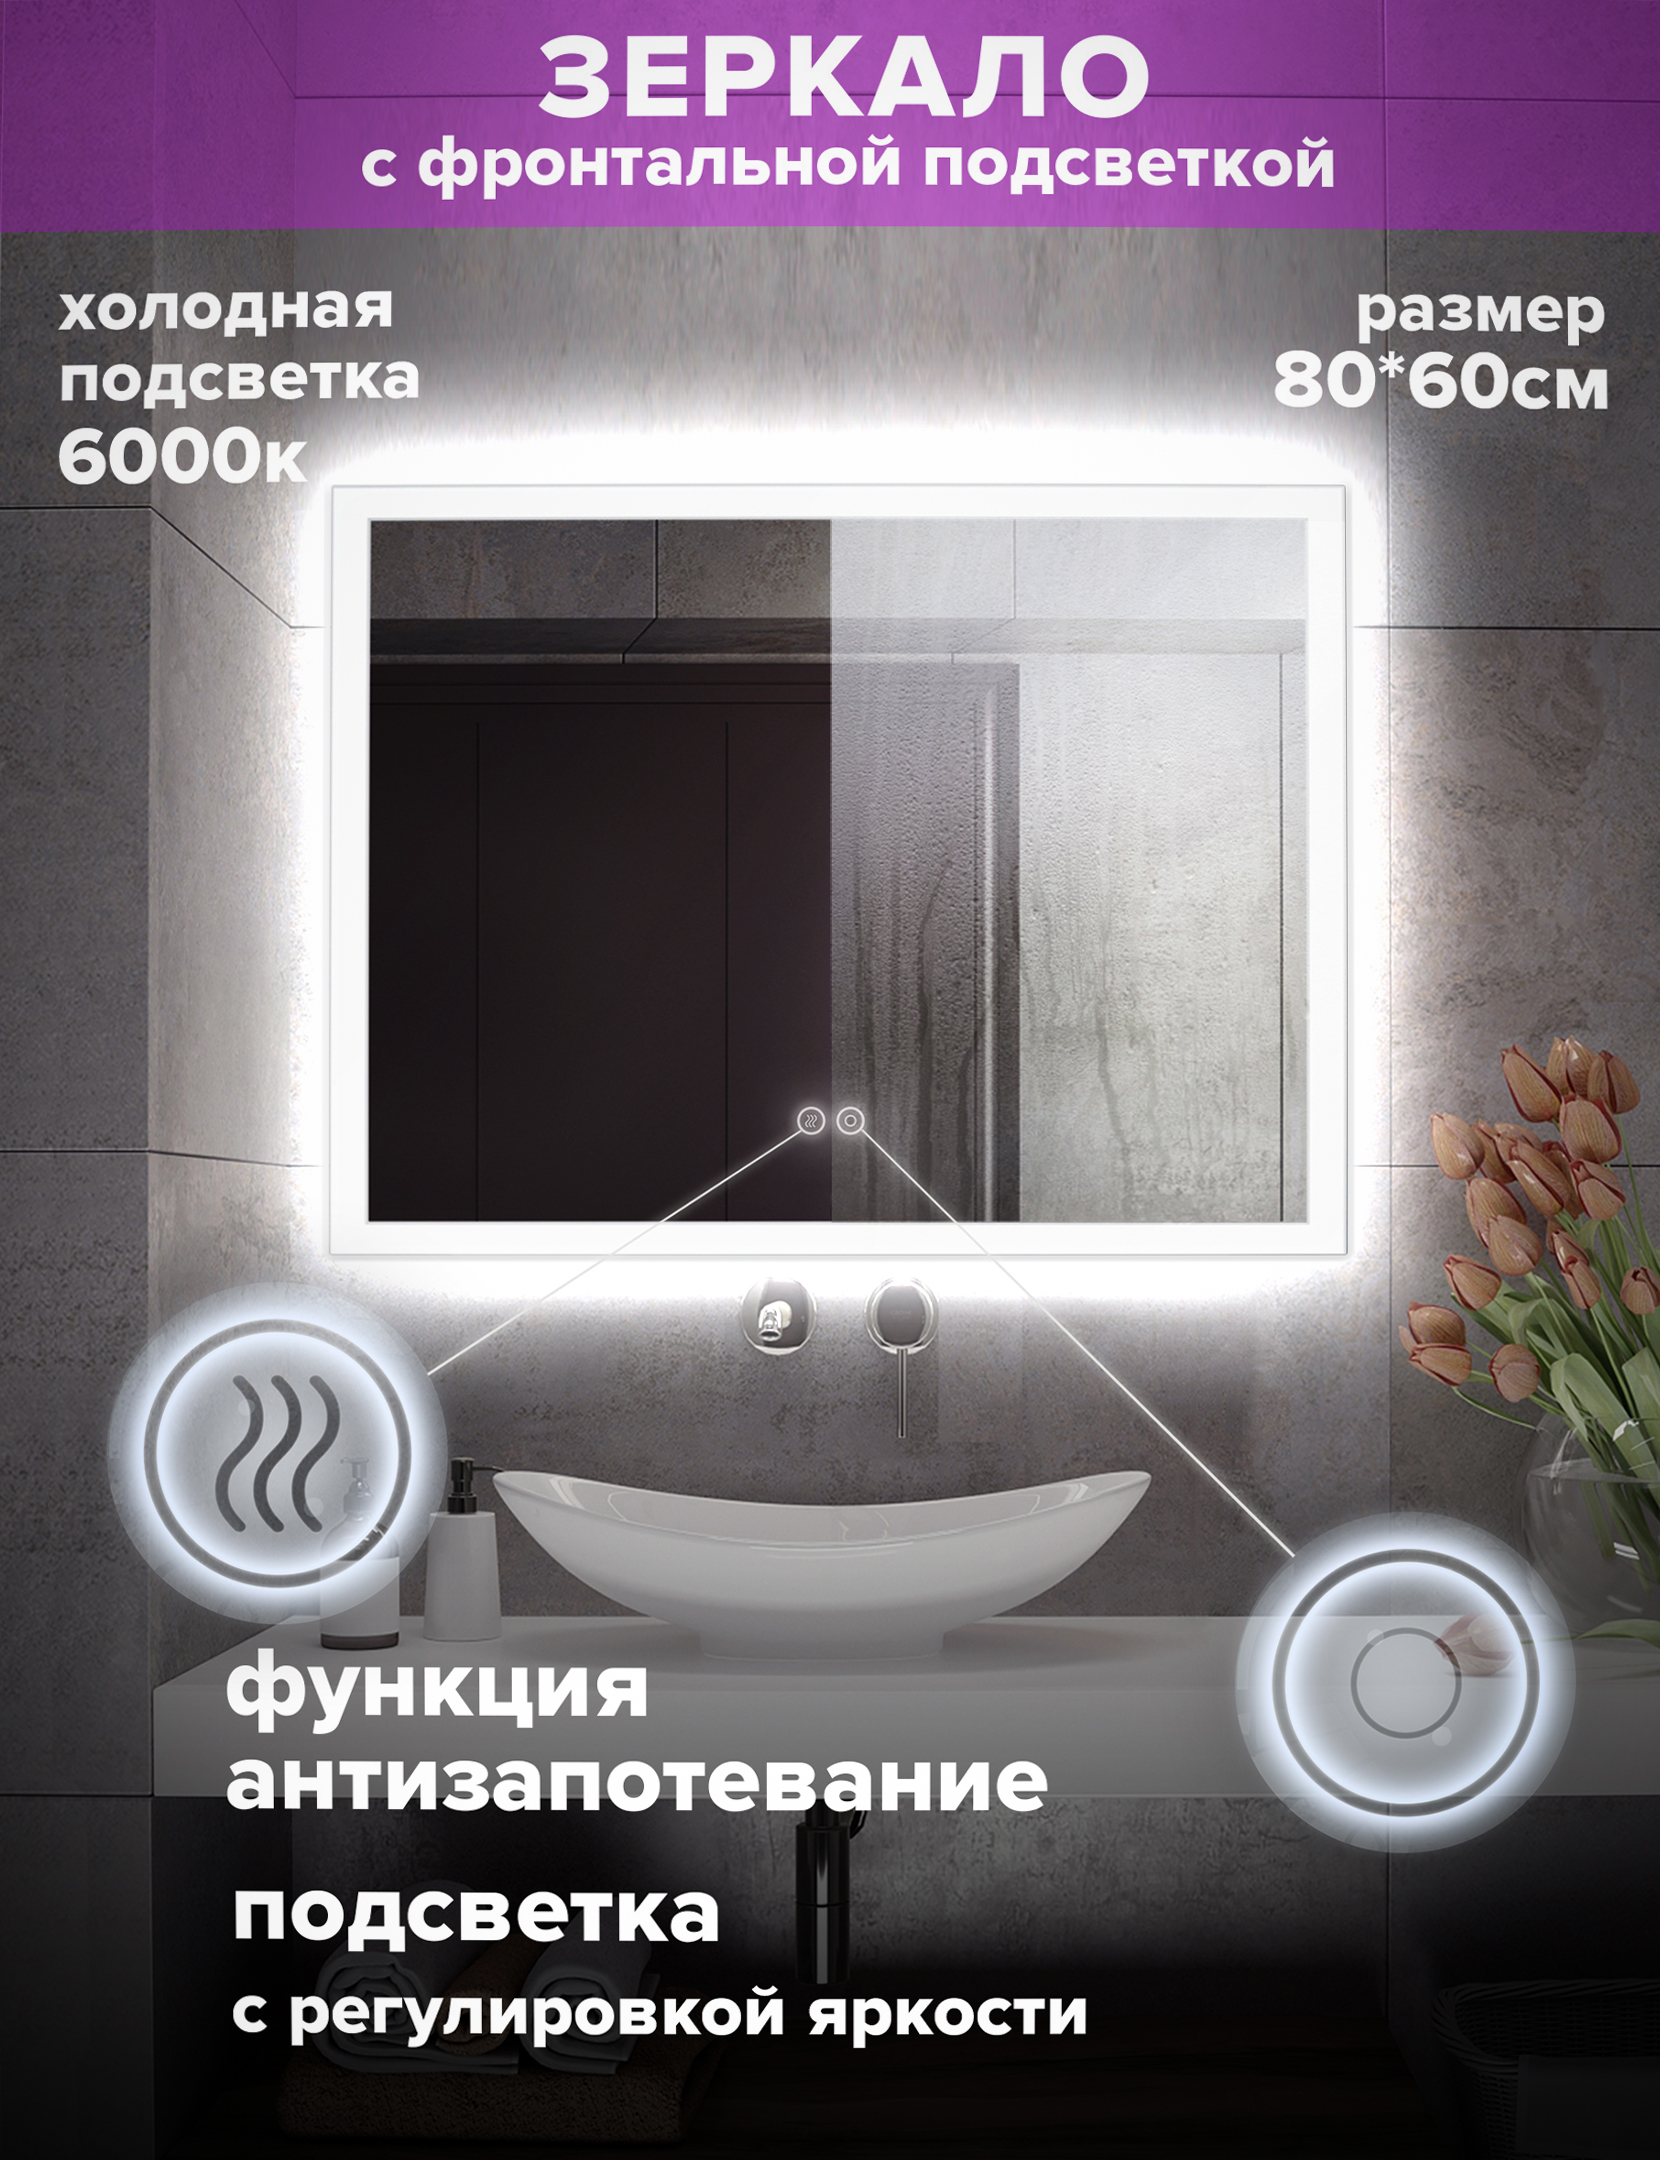 Зеркало для ванной Alfa Mirrors холодная подсветка 6000К, прямоугольн. 80*60см, MNiko-86Ah